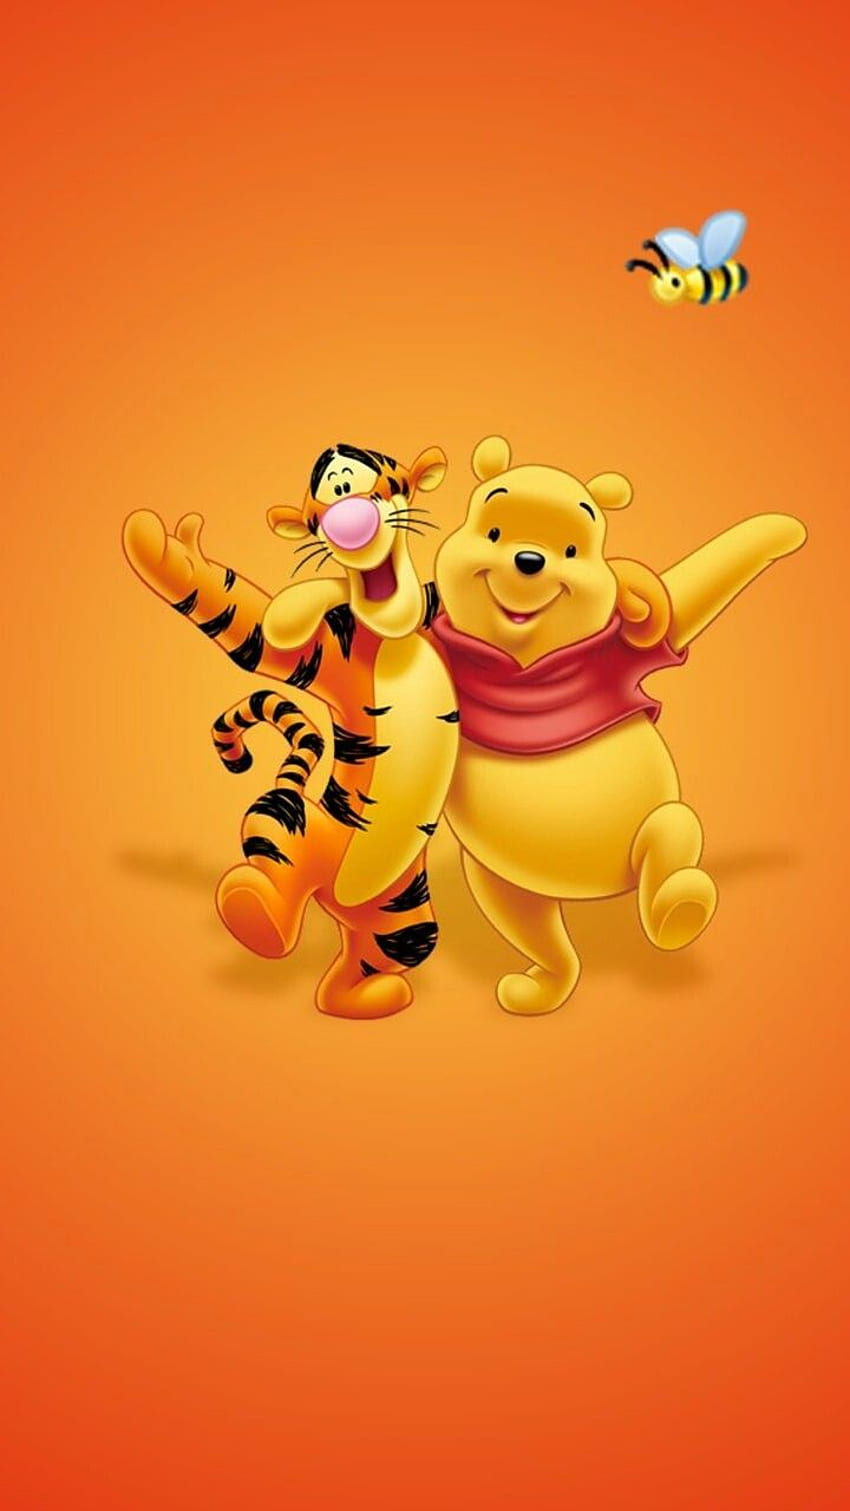 Tìm kiếm một hình nền Disney đáng yêu để trang trí điện thoại của bạn? Hãy xem những hình nền Cute Disney, Cute Winnie The Pooh, Tigger Disney HD phone... với những nhân vật Disney đáng yêu dễ thương sẽ đem đến cho bạn nét đẹp tươi trẻ và ngọt ngào.